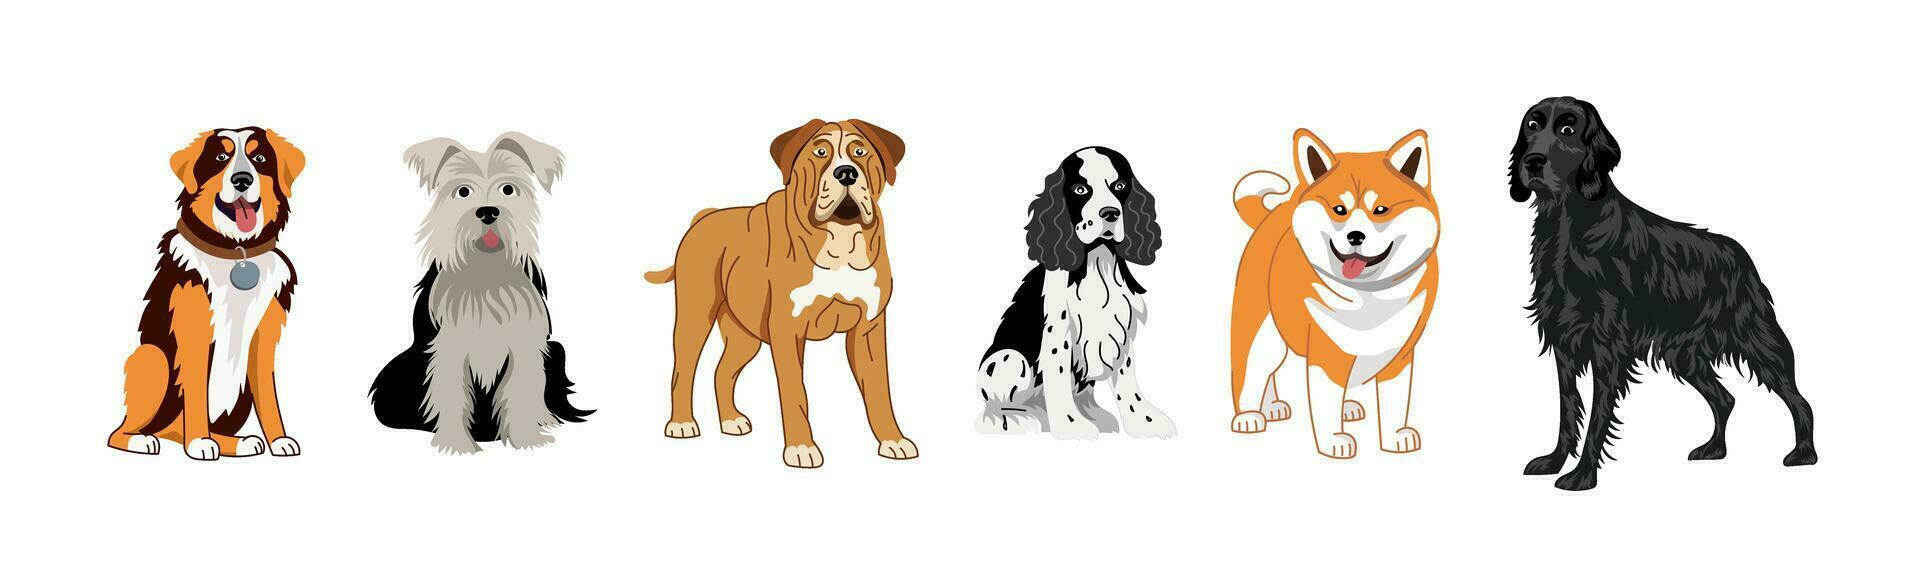 ein einstellen von Hunde von anders Rassen. Vektor Illustration auf ein Weiß Hintergrund von ein Setter, Spaniel, Terrier, Dogge, Shiba inu, Akita.